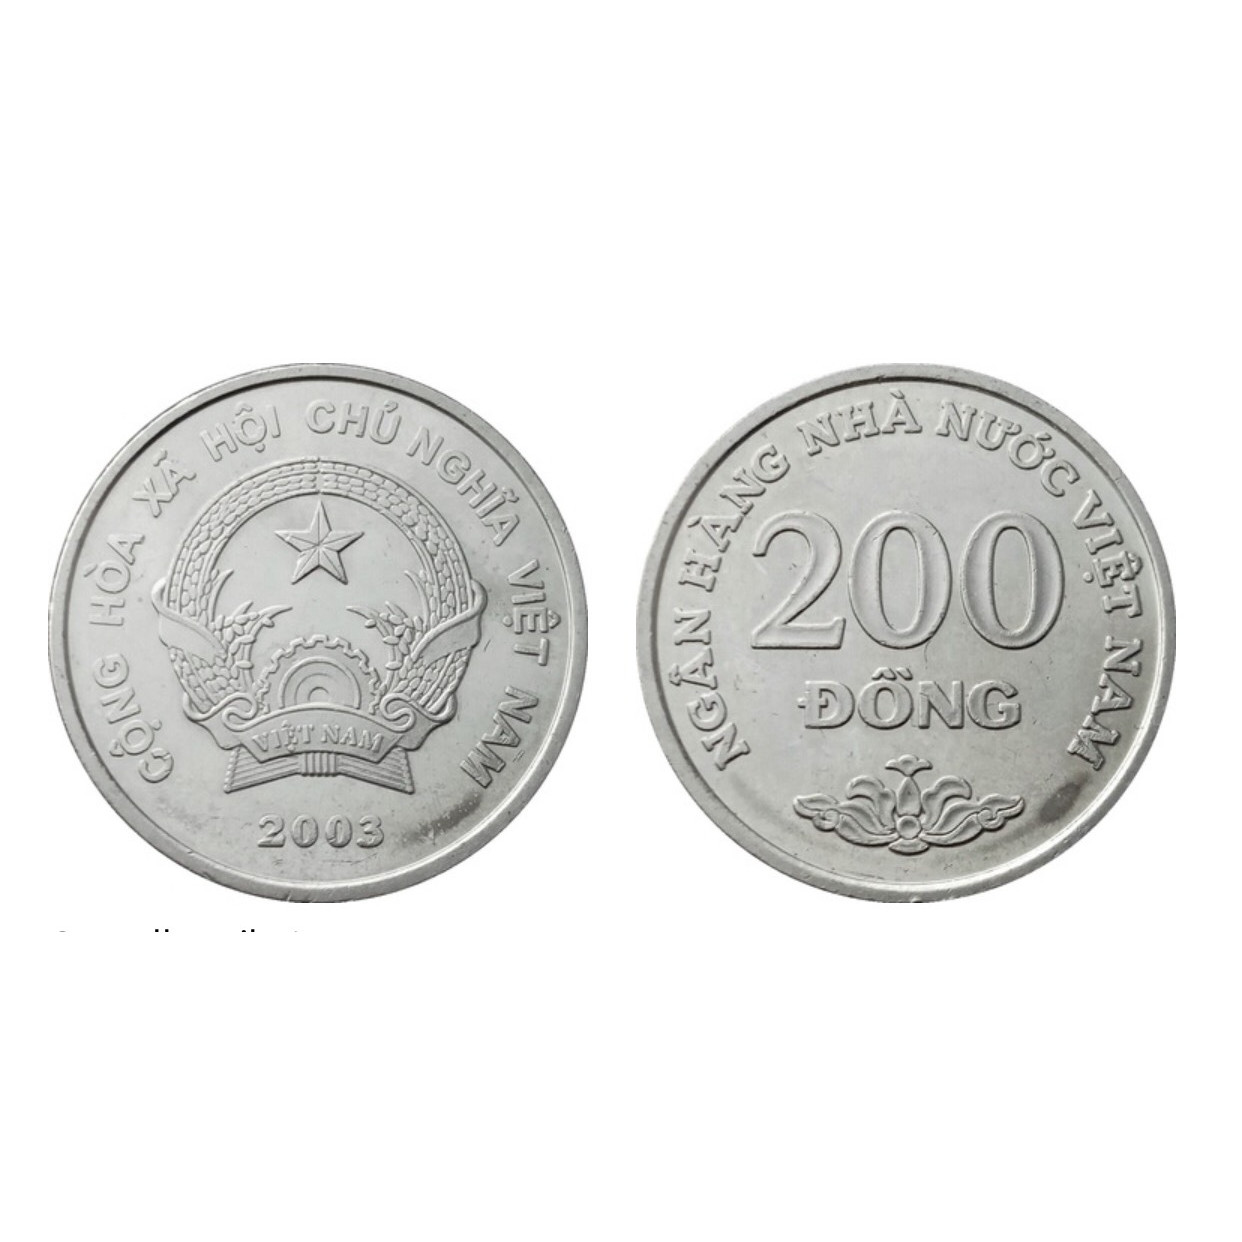 Combo 5 viên xu Việt Nam 2003 mệnh giá 200 đồng